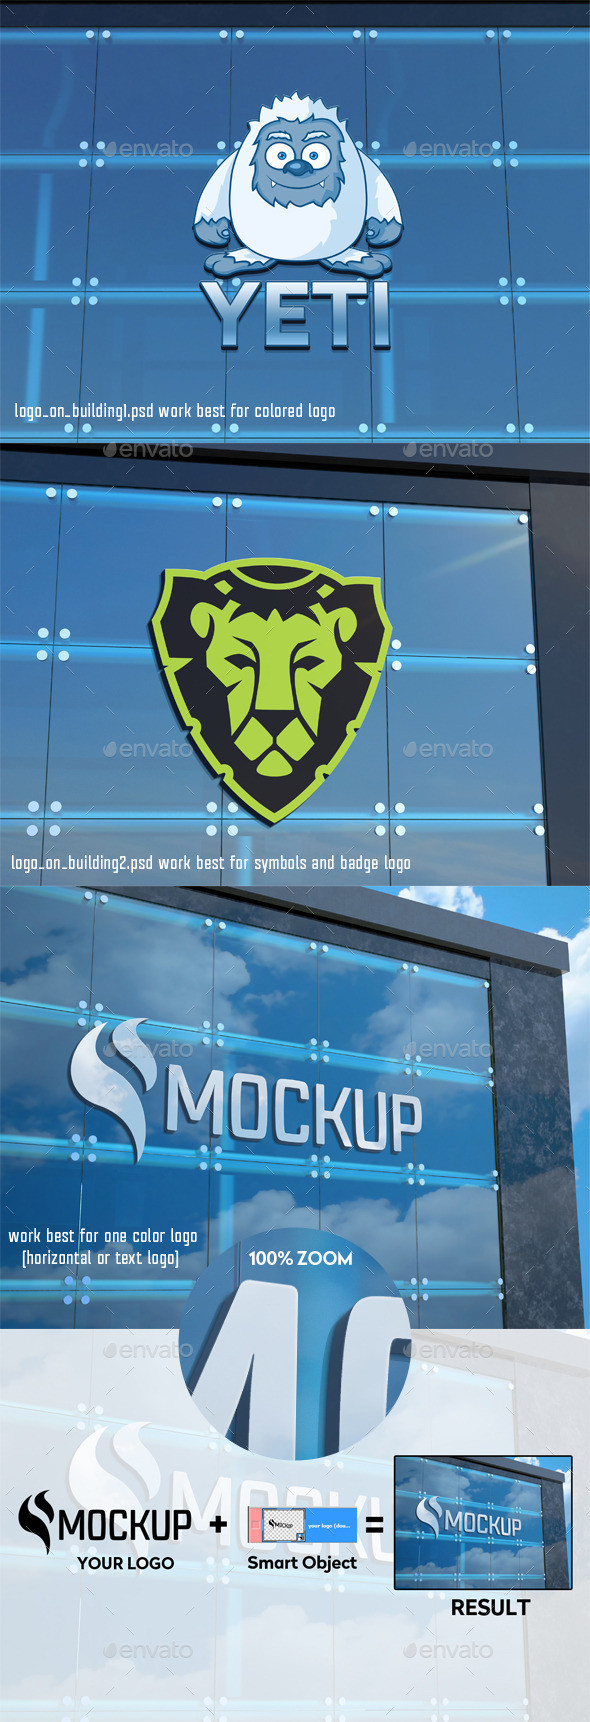 Logo on building mockup gr